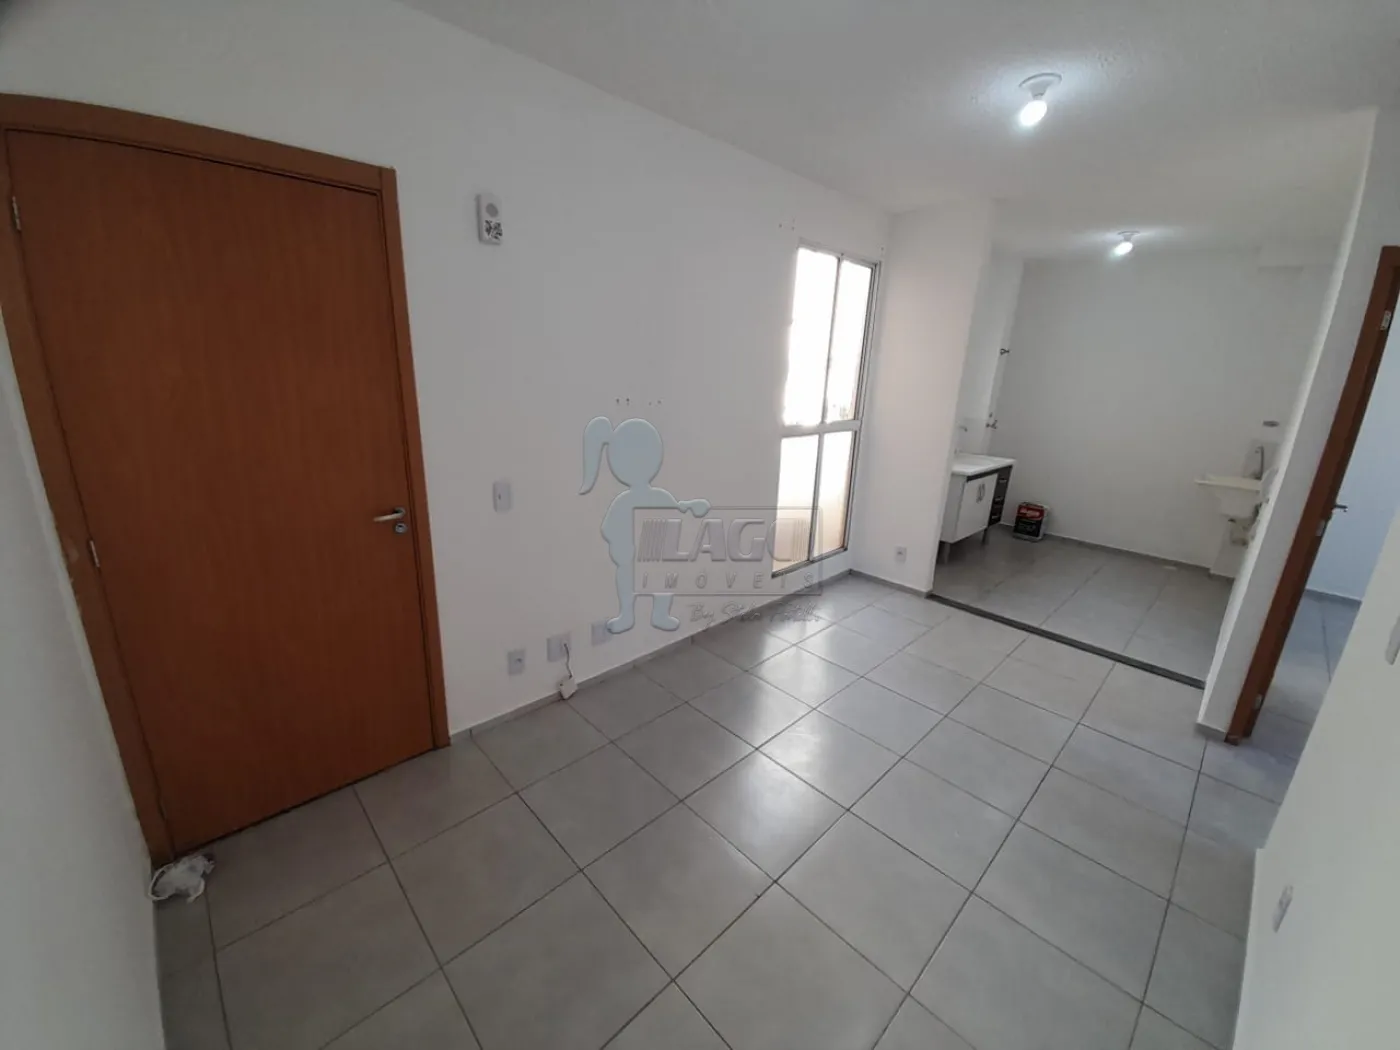 Comprar Apartamento / Padrão em Ribeirão Preto R$ 149.900,00 - Foto 3